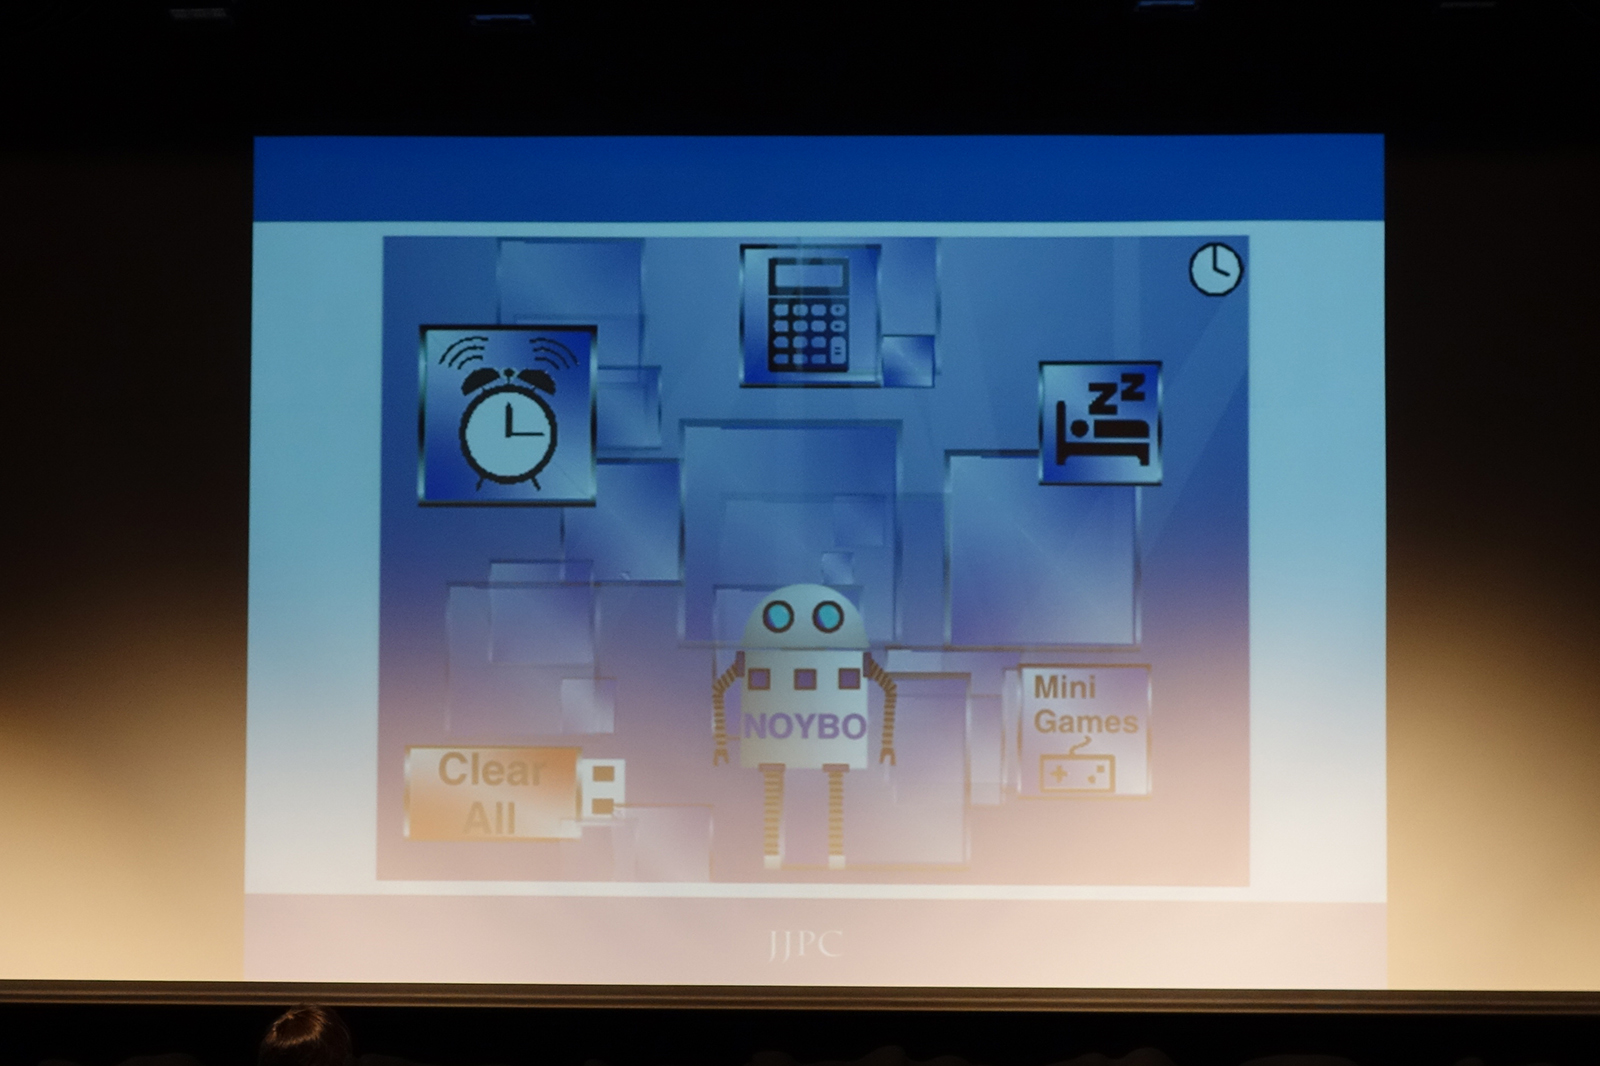 森谷頼安さんの作品「あなたのバーチャルアシスタントロボット“NOYBO”」。プログラミング言語はScratchを利用し、電卓機能や発声機能を実装するなど、技術的にもレベルが高い作品だ